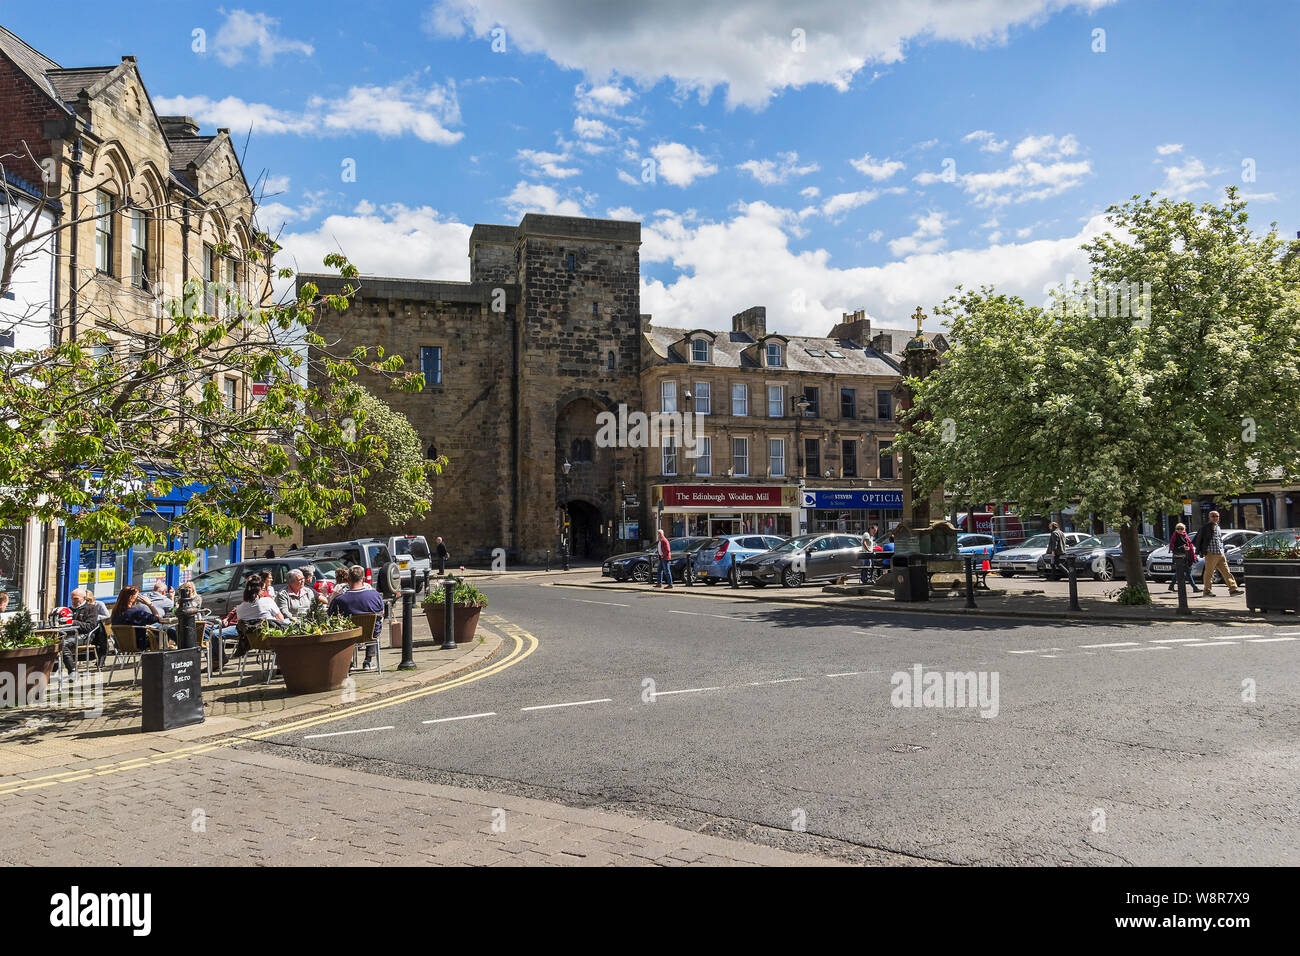 Hexham, Northumberland, UK. Street scene Stock Photo